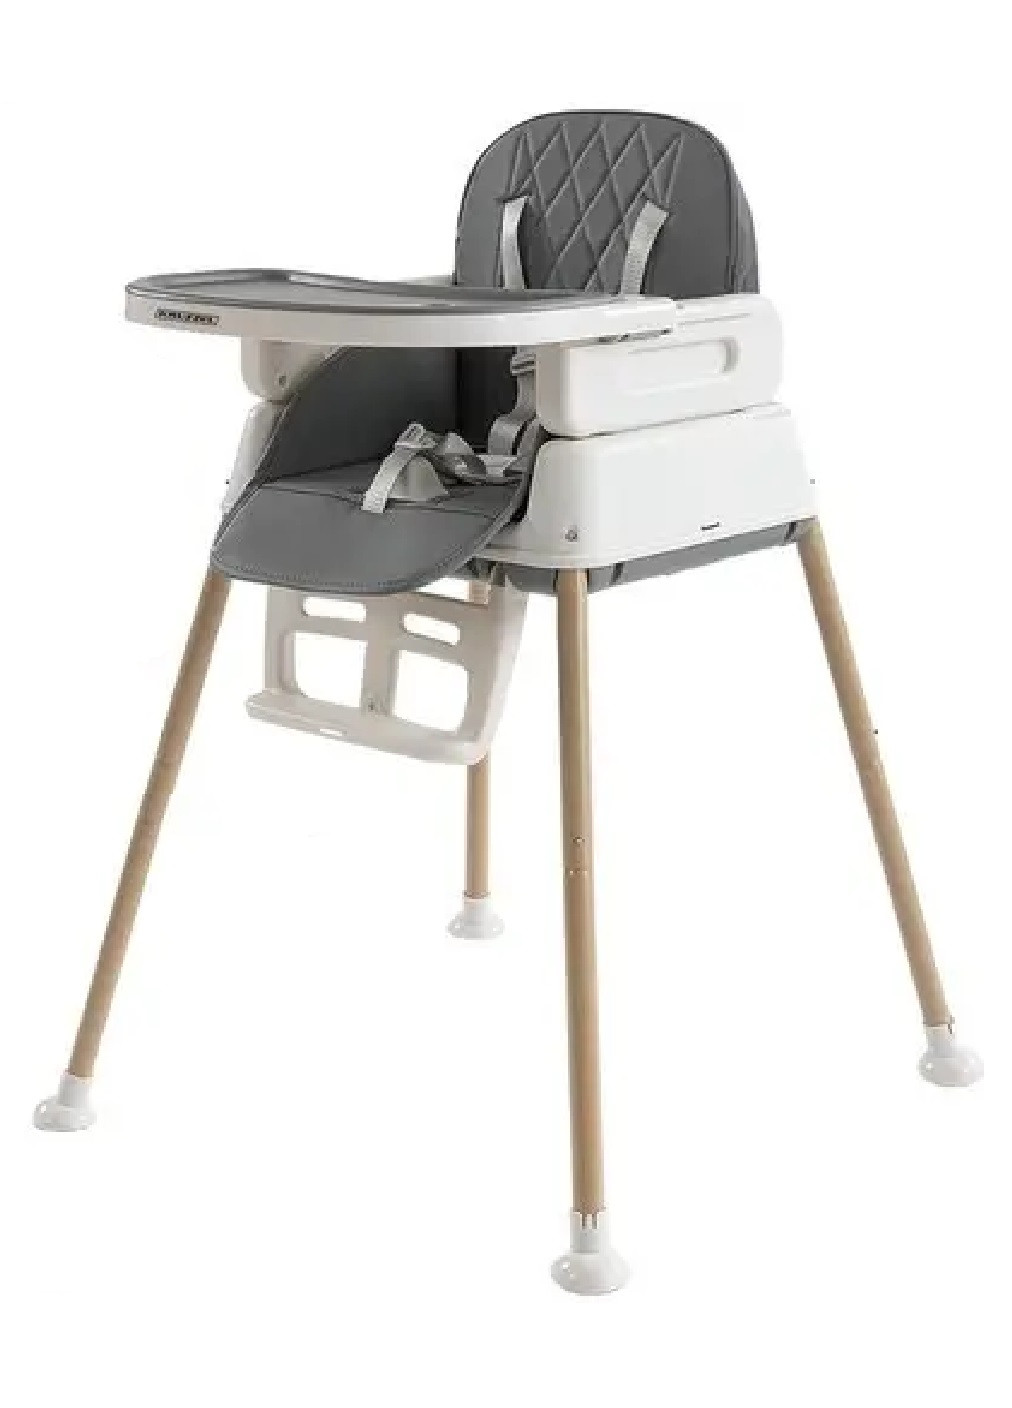 Детское кресло стул для кормления детей малышей со съемным столом ножками столешницей 6 в 1 90х66х66см (475538-Prob) Серое Unbranded (268546430)